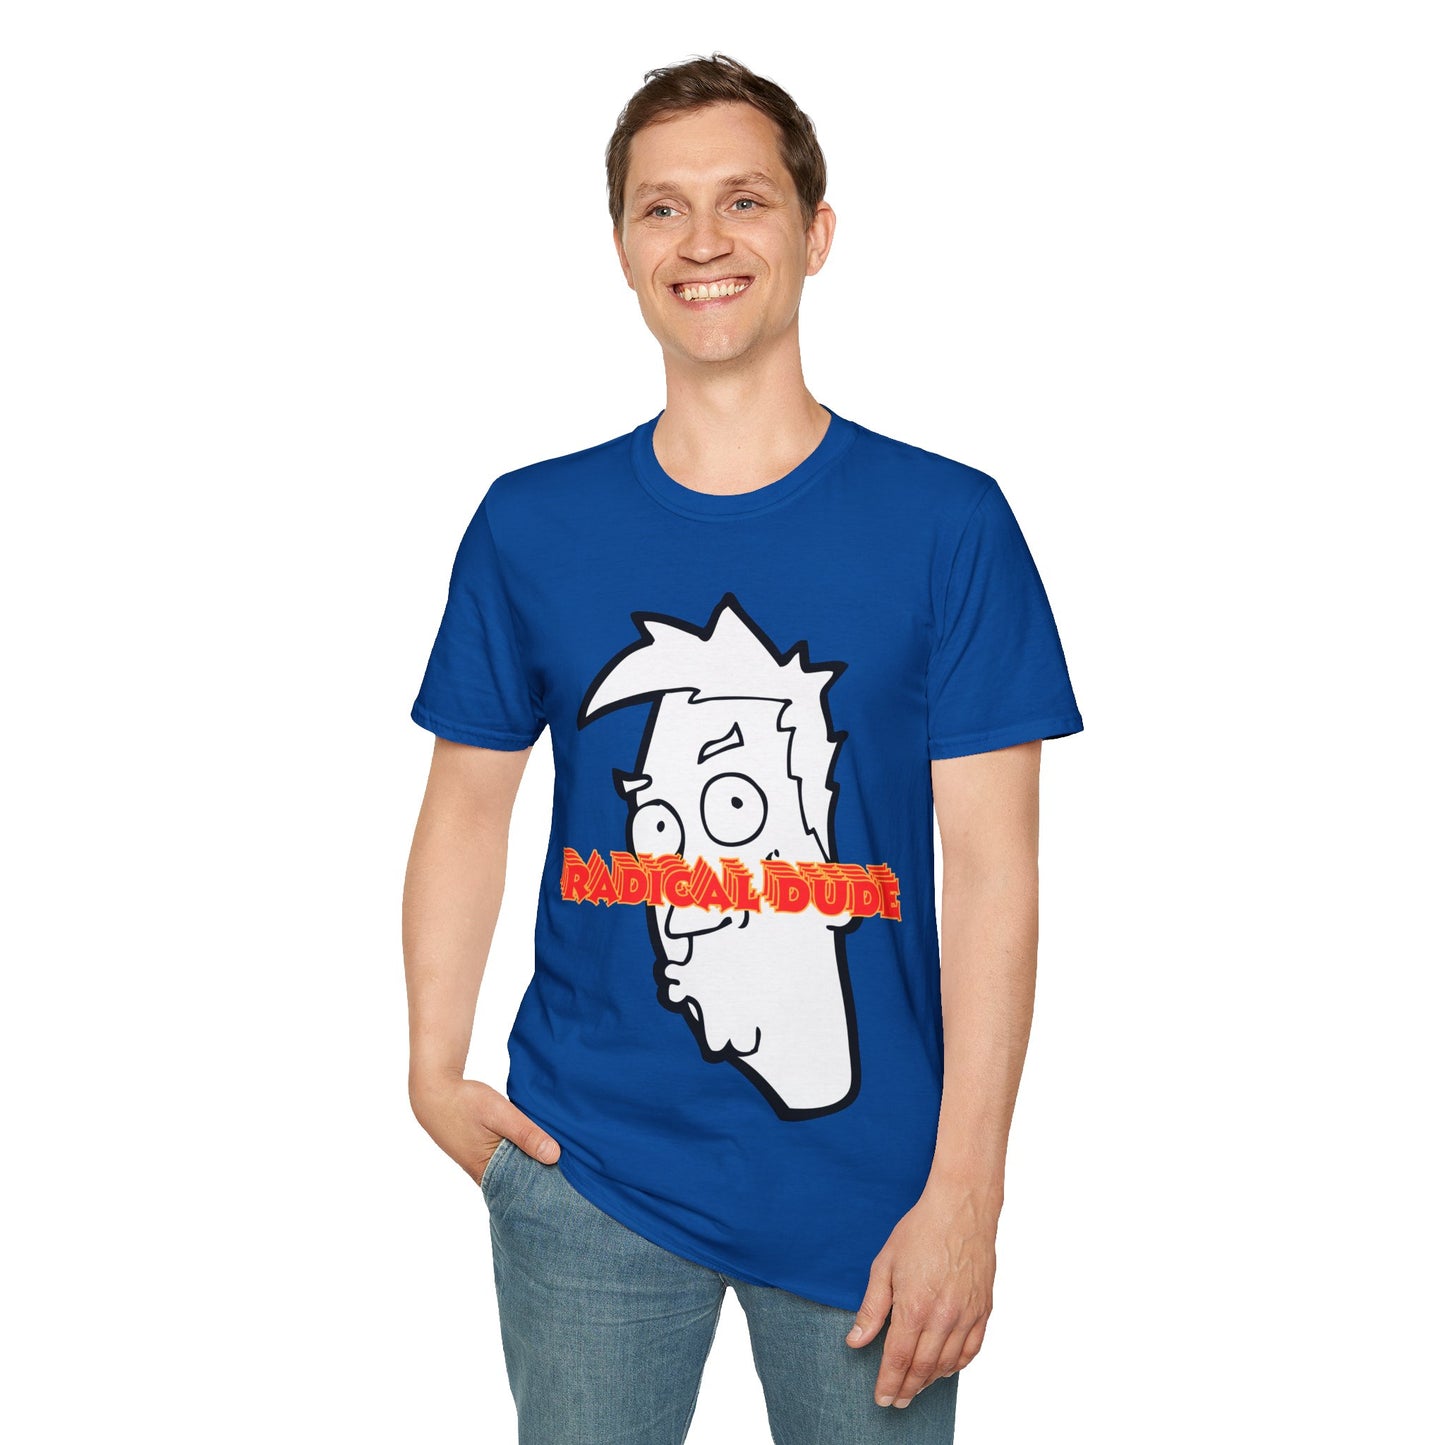 Unisex Softstyle (Radical Dude) T-Shirt